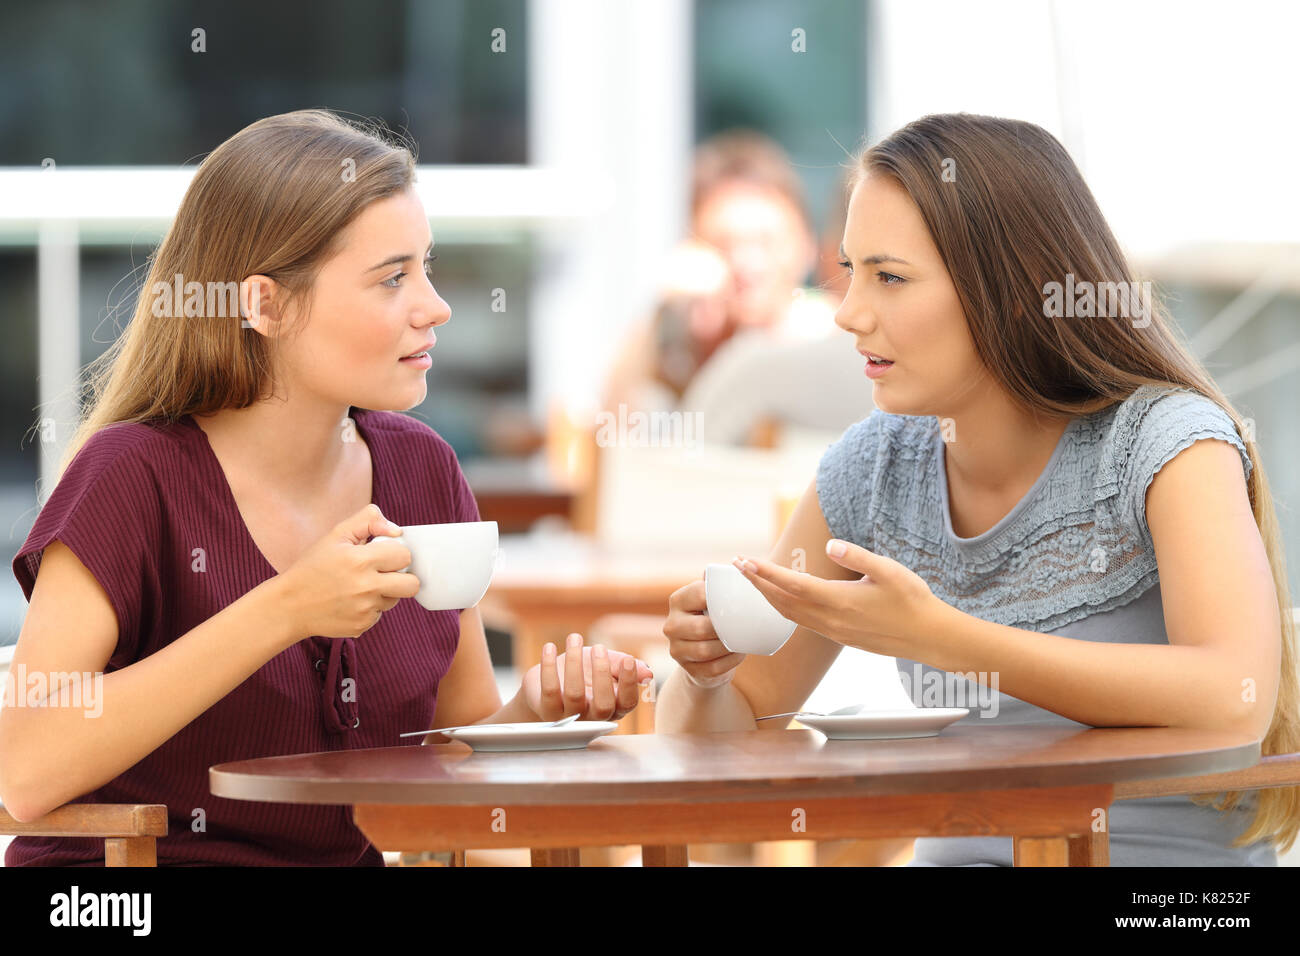 Zwei schwere Freunde sprechen, sitzen in einem Restaurant Stockfoto